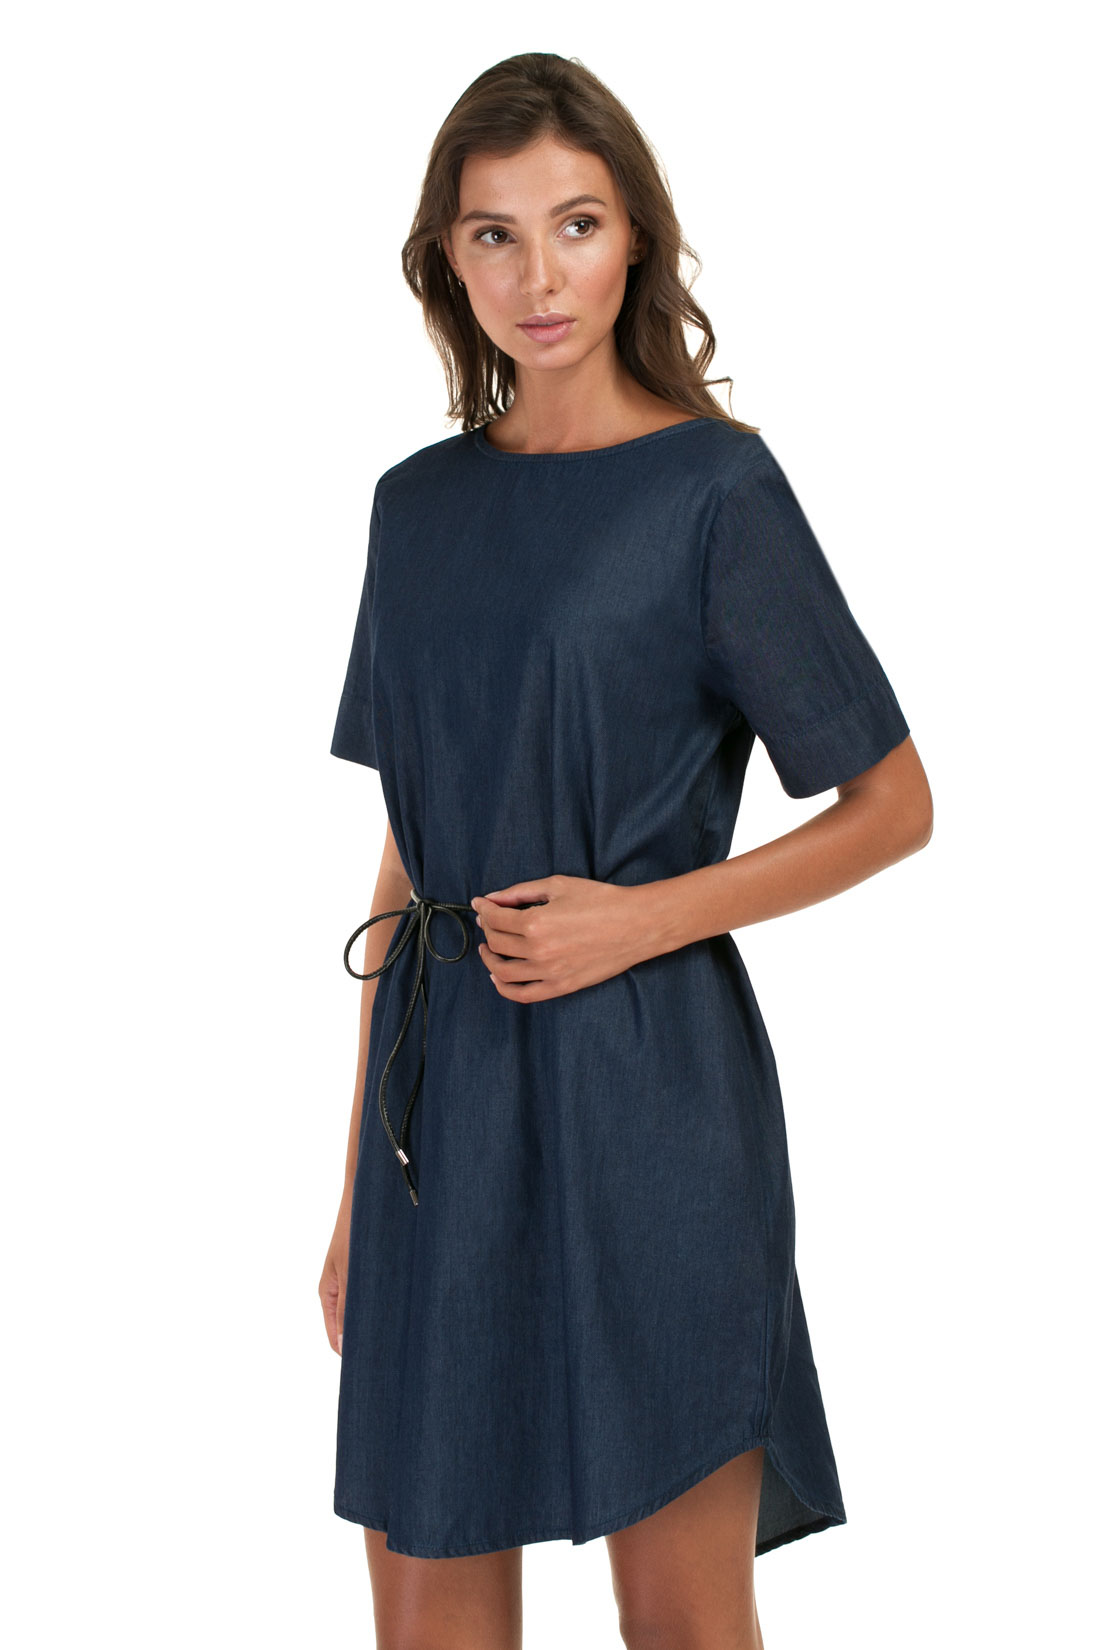 Платье из денима-шамбри (арт. baon B457027), размер XXL, цвет navy denim#синий Платье из денима-шамбри (арт. baon B457027) - фото 5